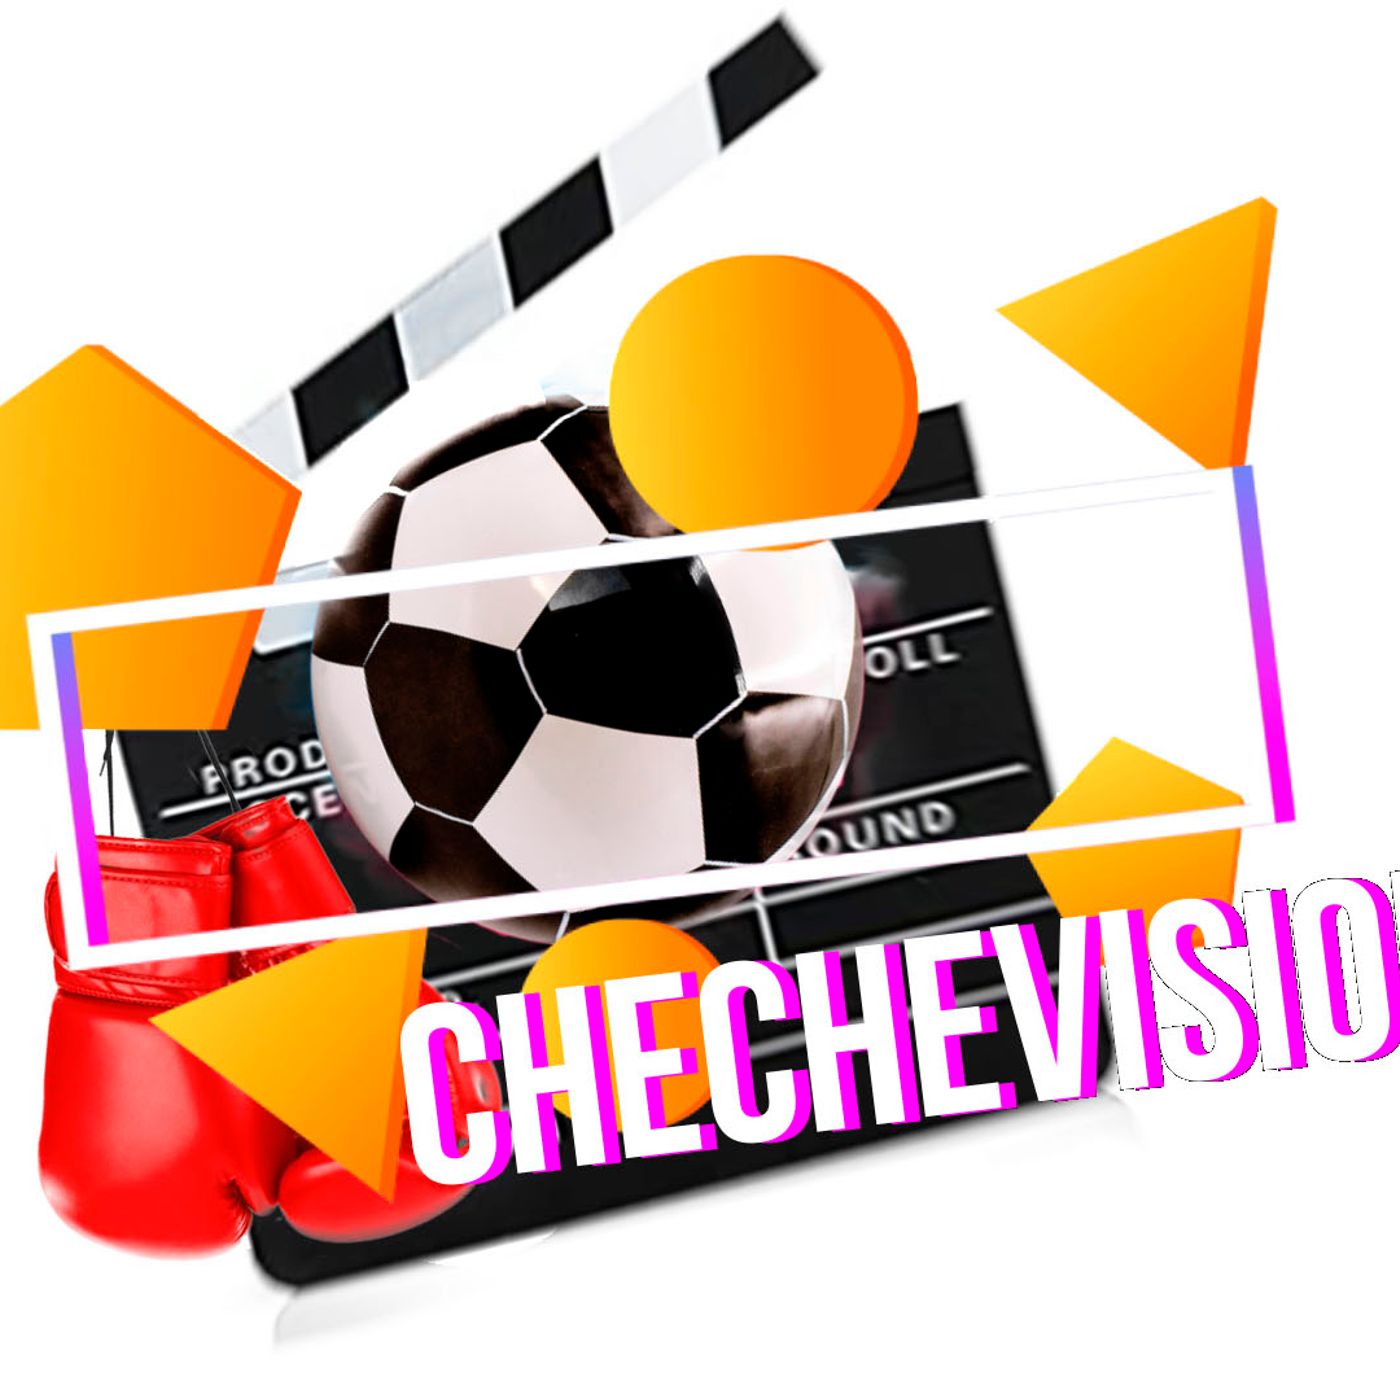 Chechevision- El mundo se va a acabar